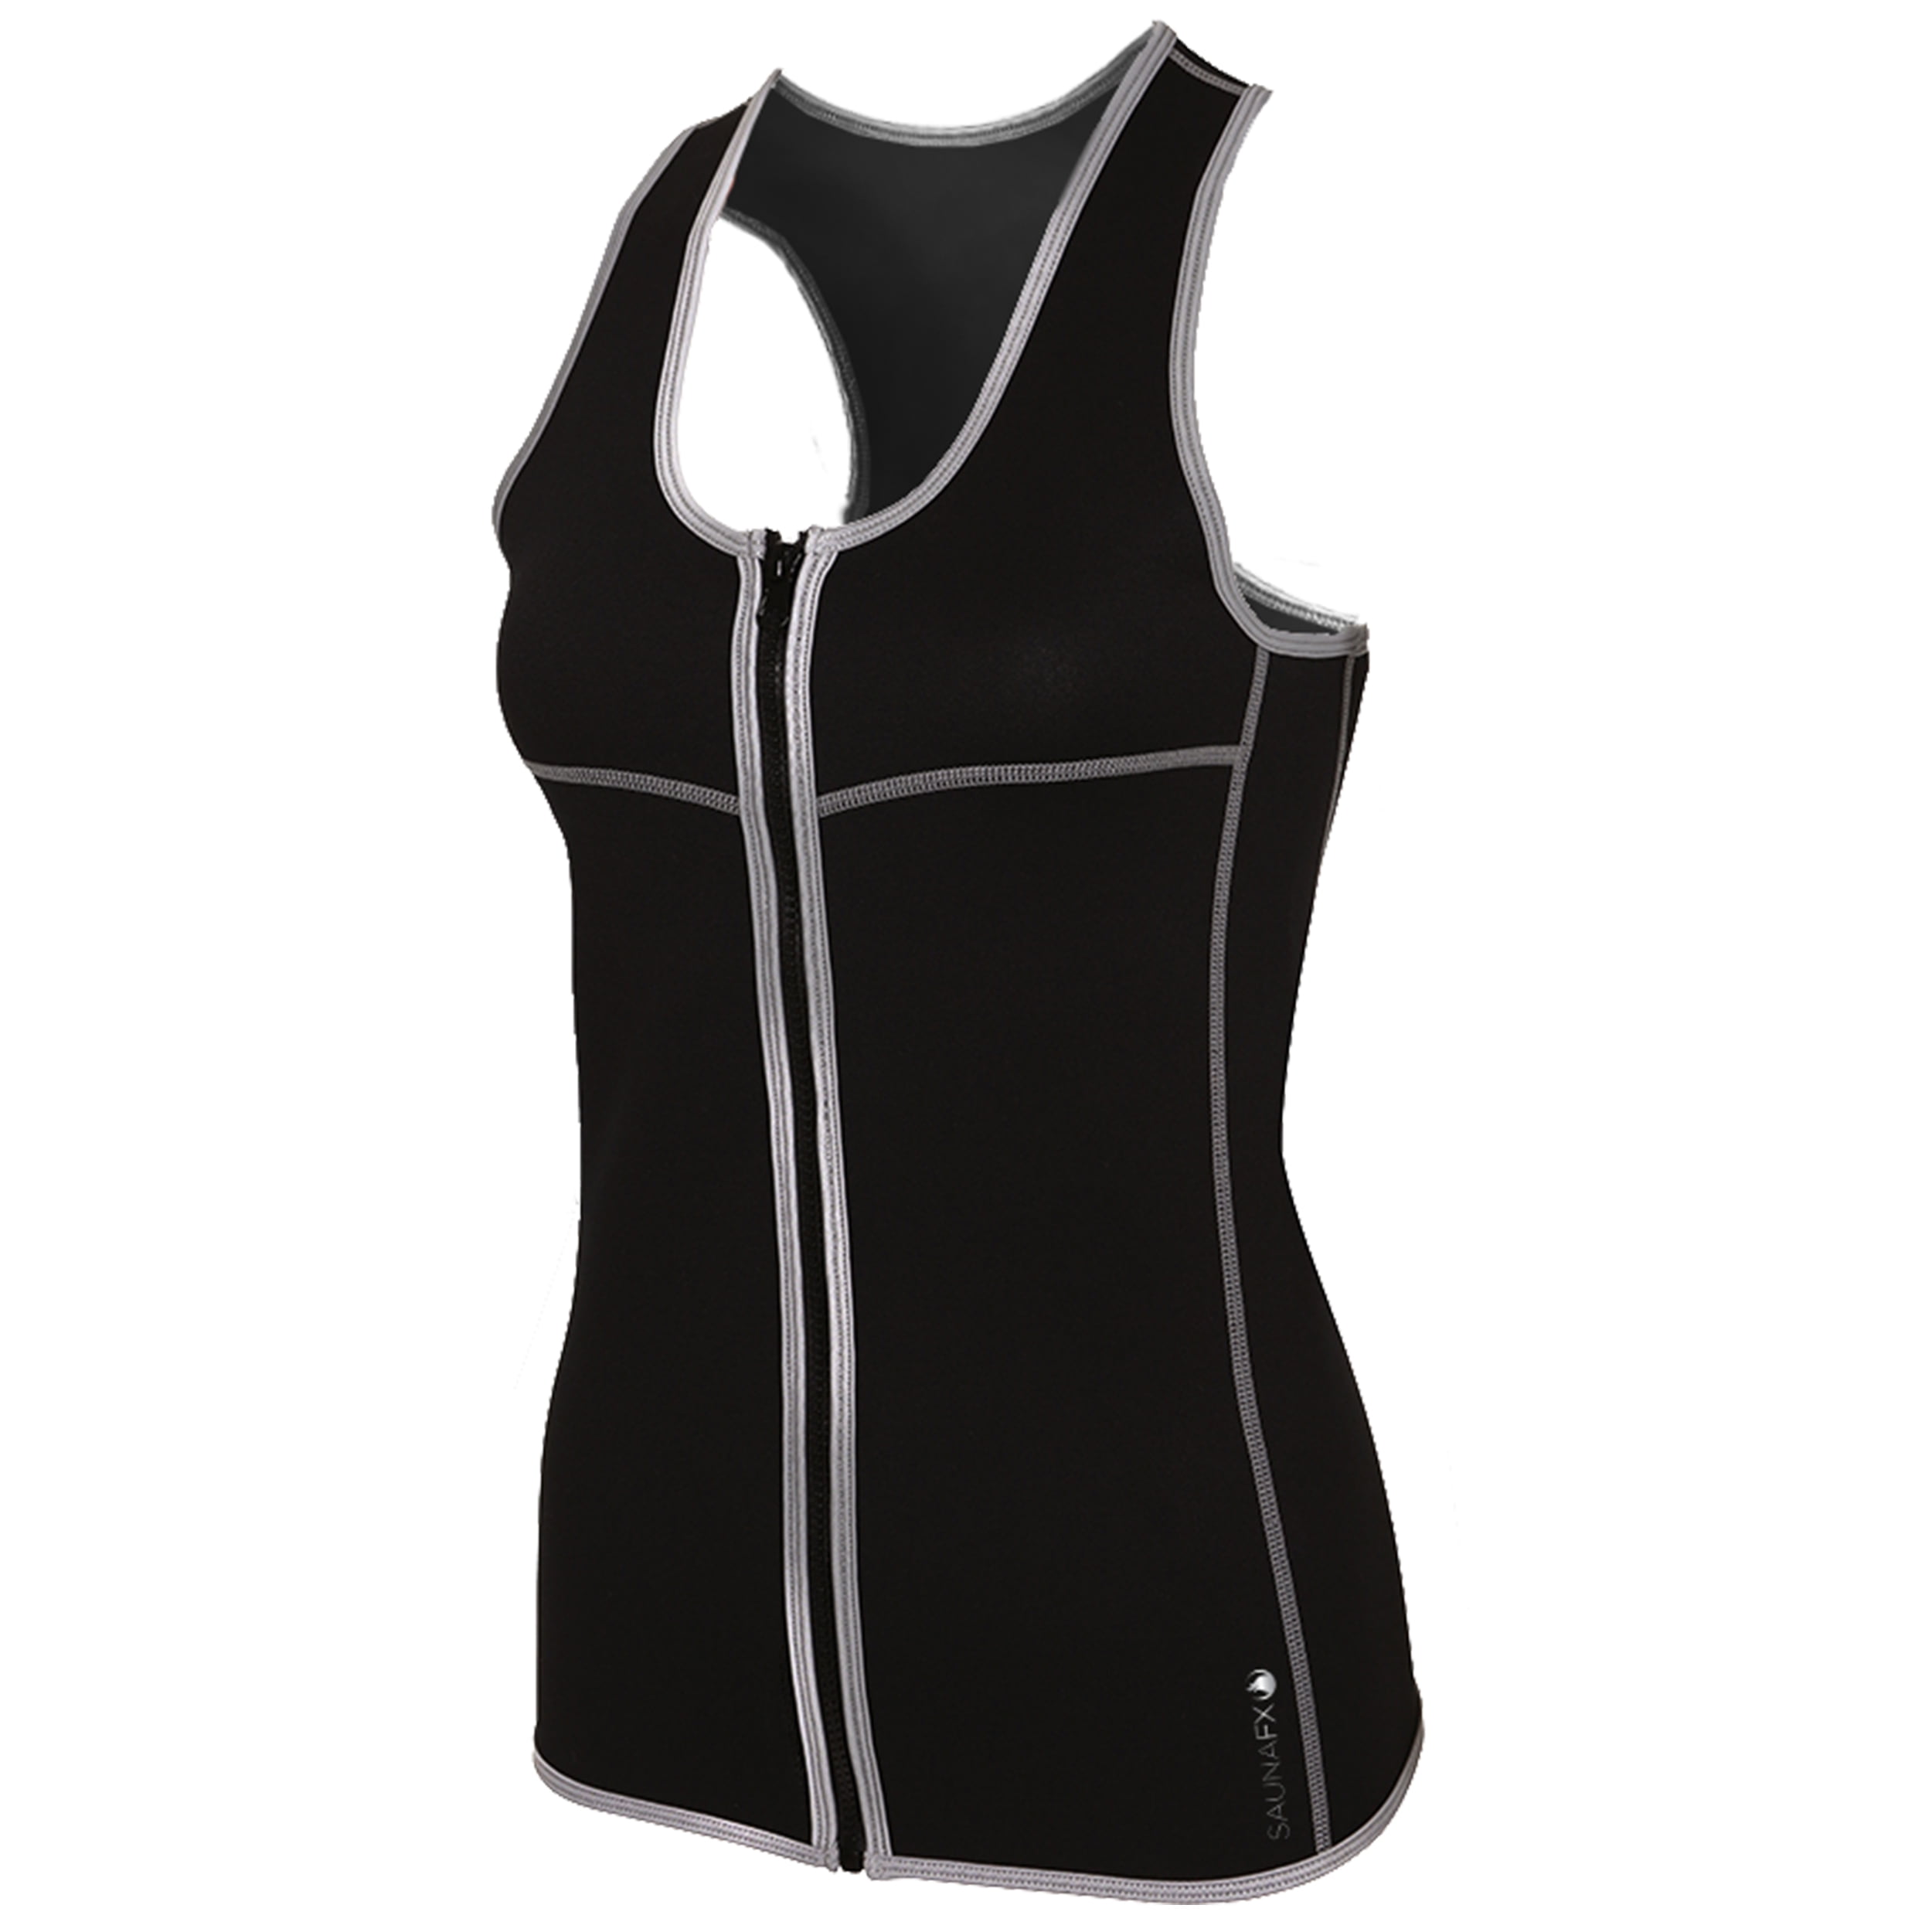 SaunaFX Vest Medium Black Neoprene Sauna Exercise Full Zip Suit Top Womens